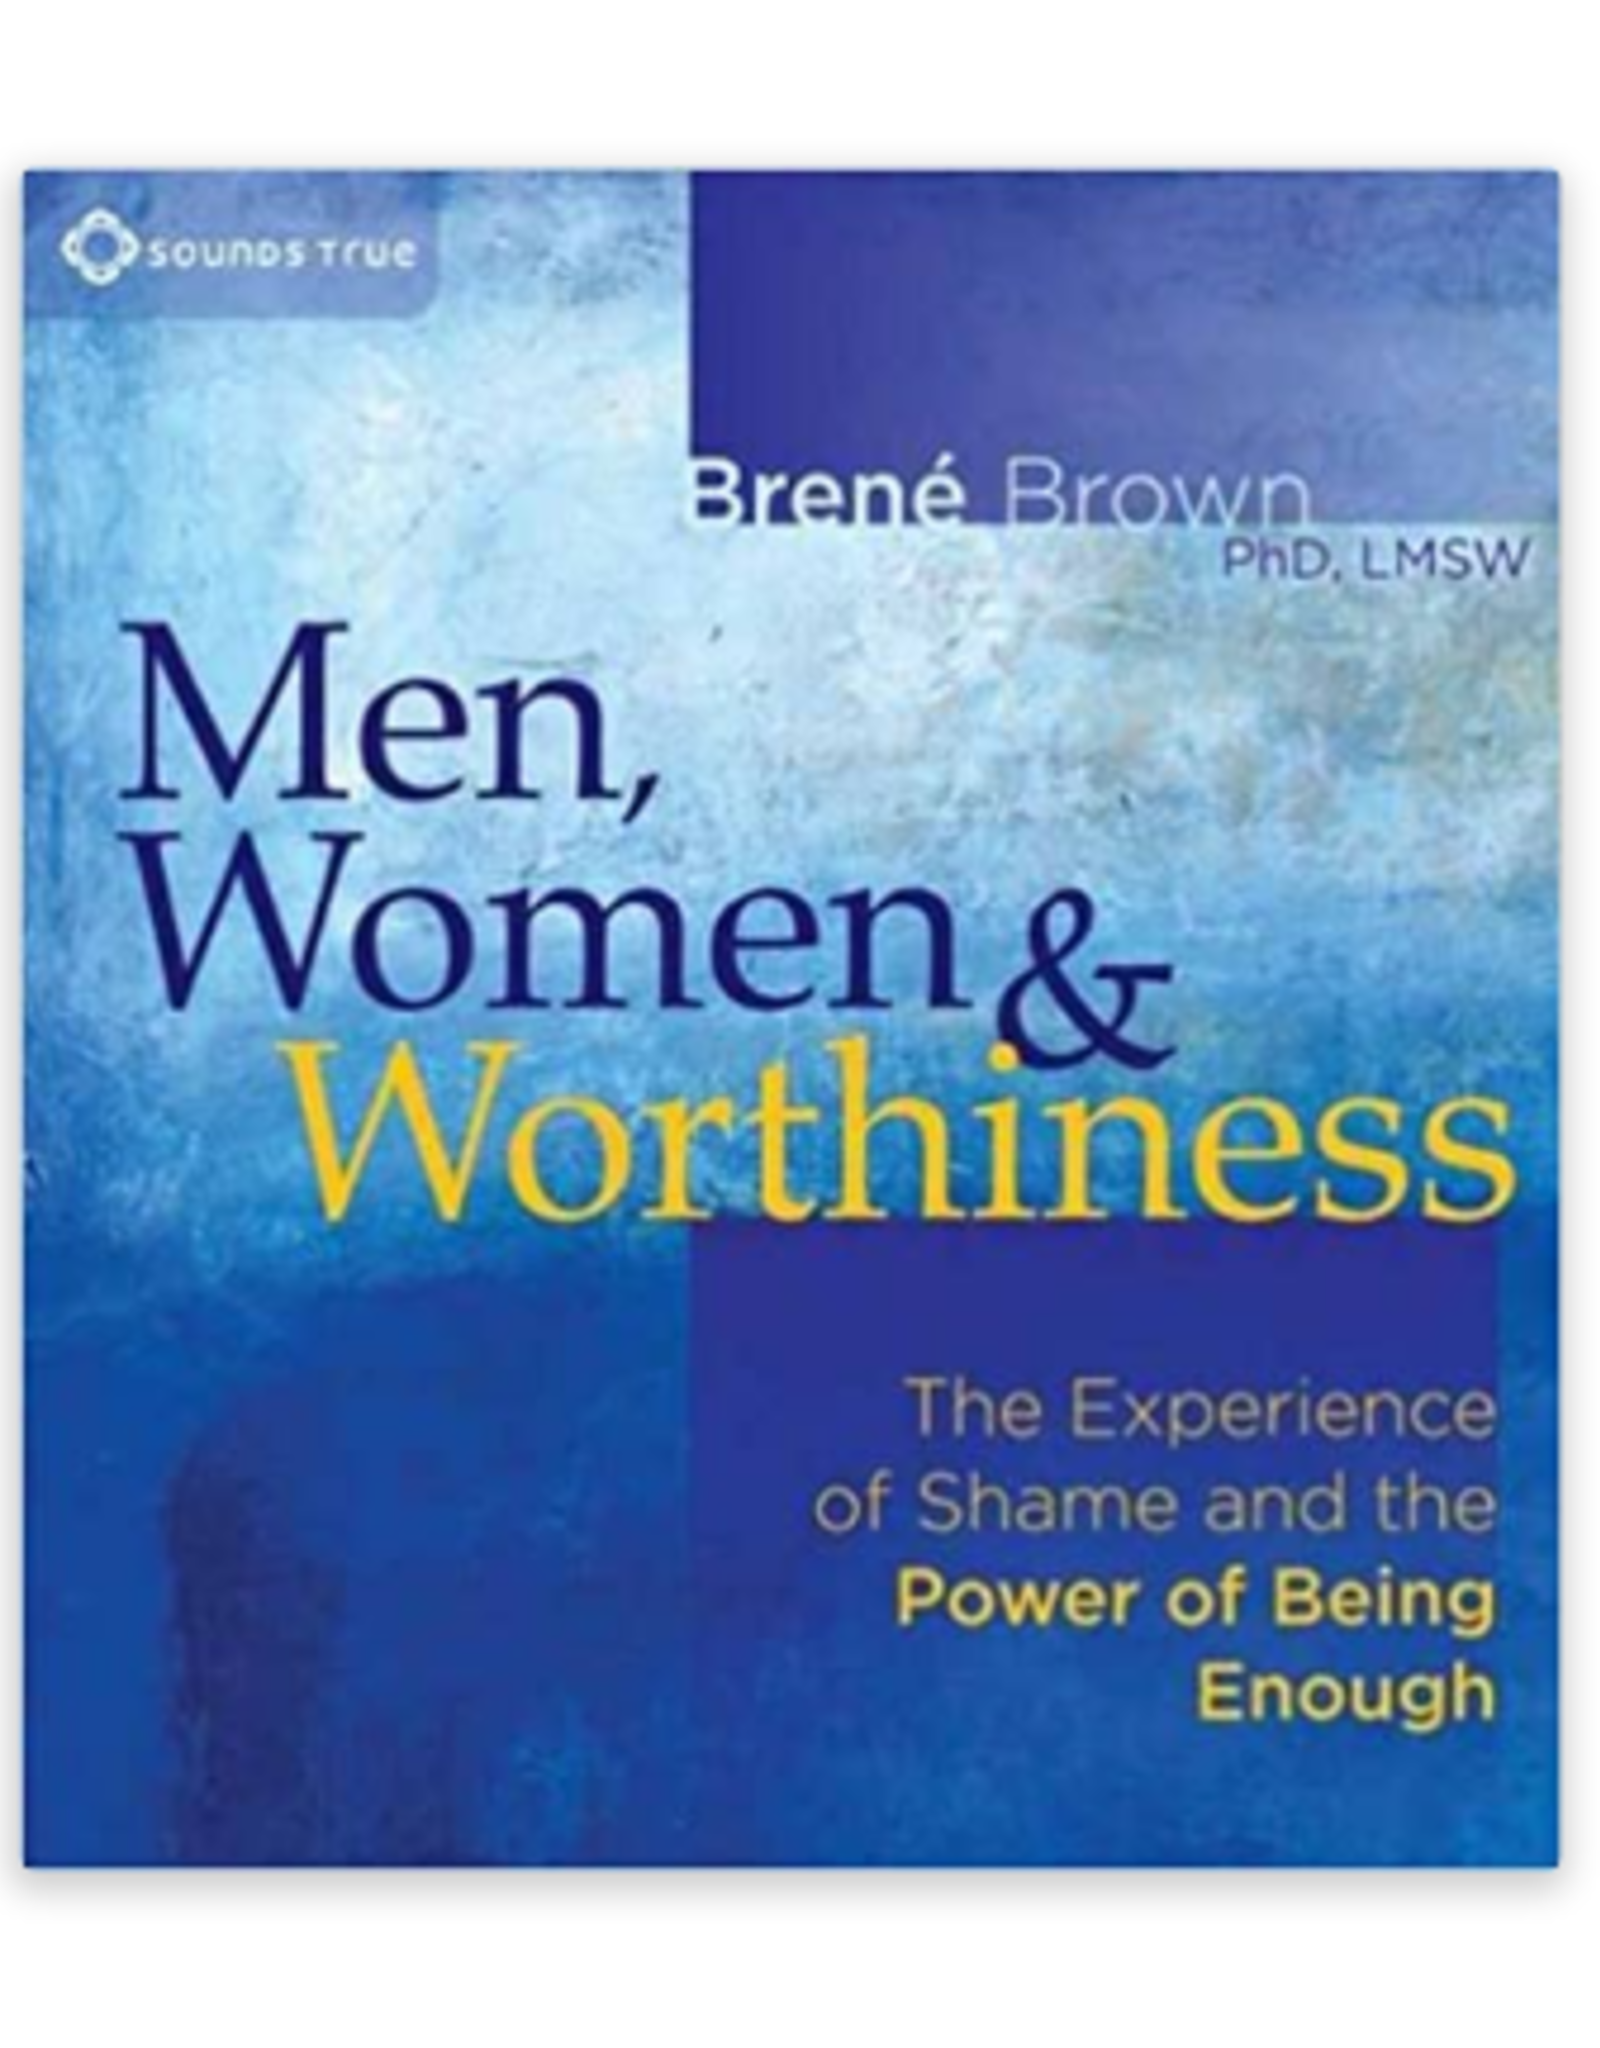 Brene Brown Men, Women & Worthiness CD by Brene Brown